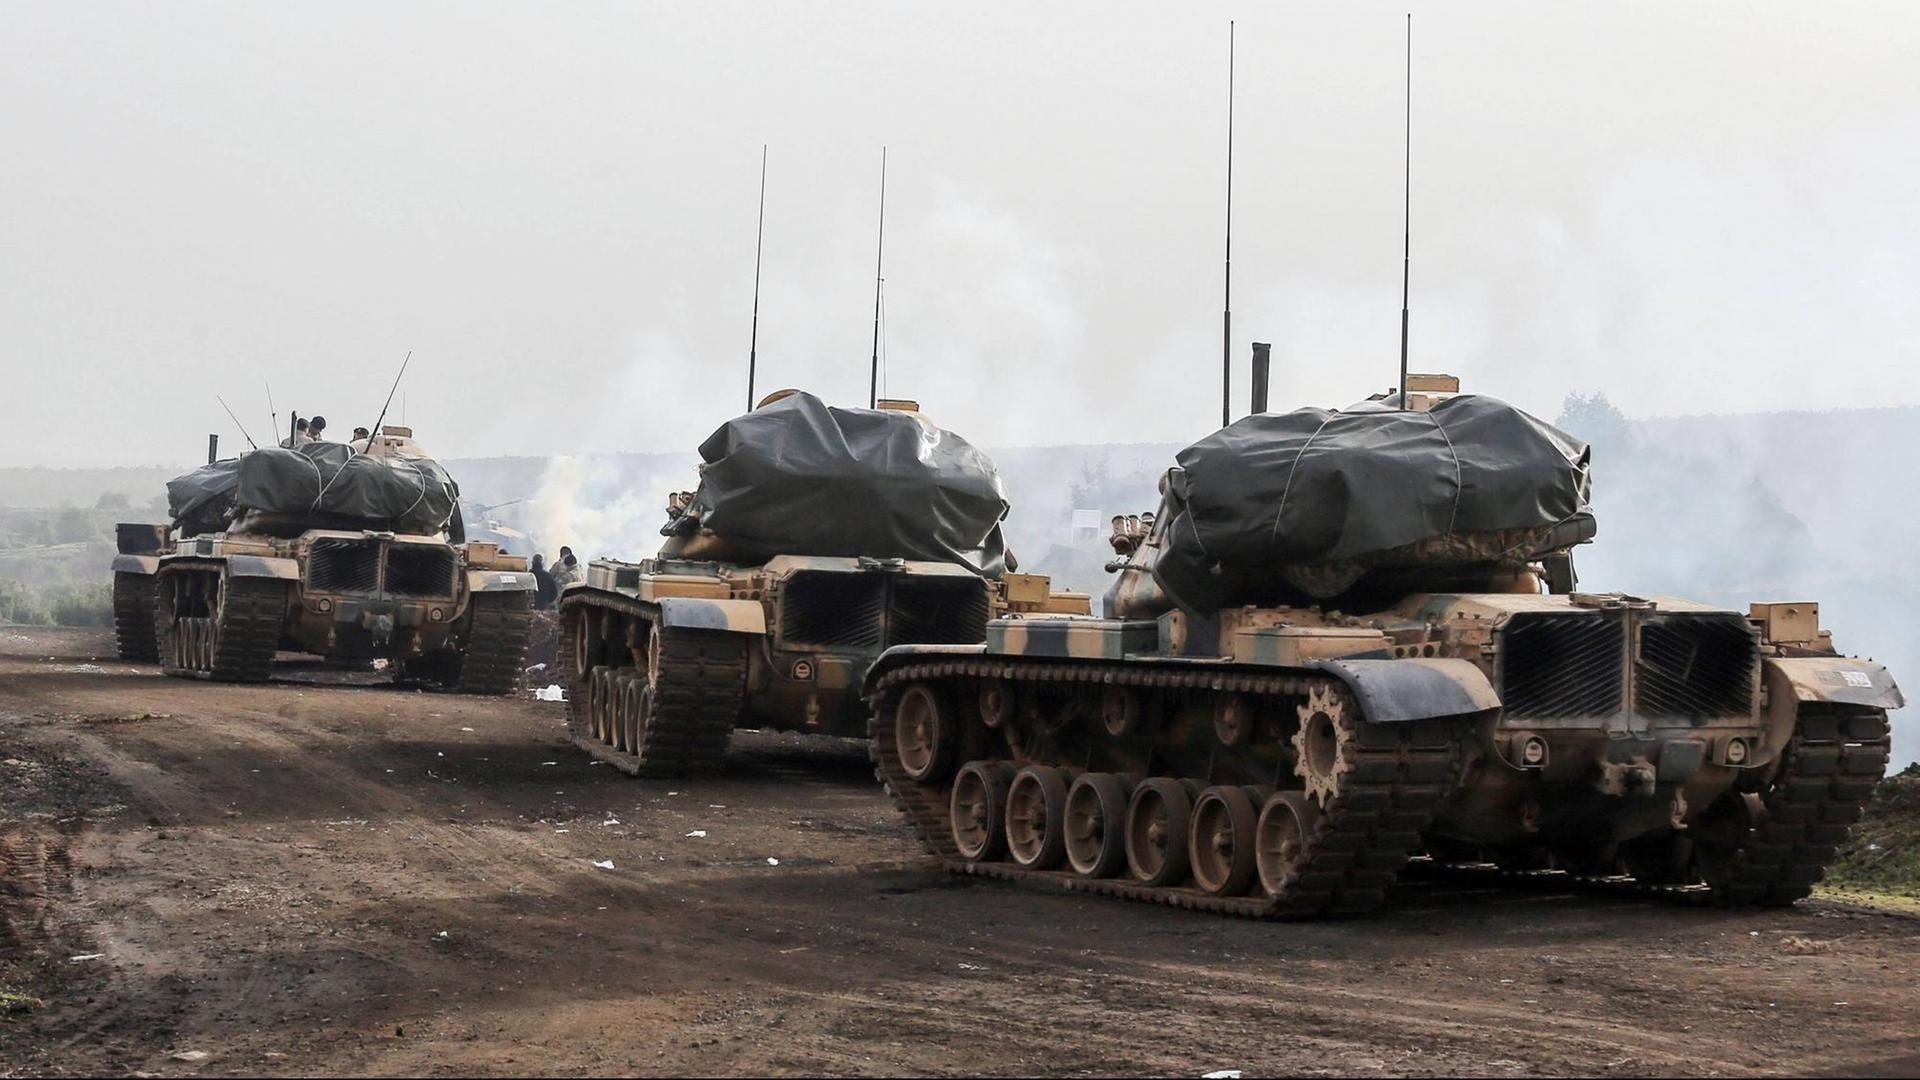 Panzer der türkischen Armee gesehen in Afrin, Syrien - 22.1.2018